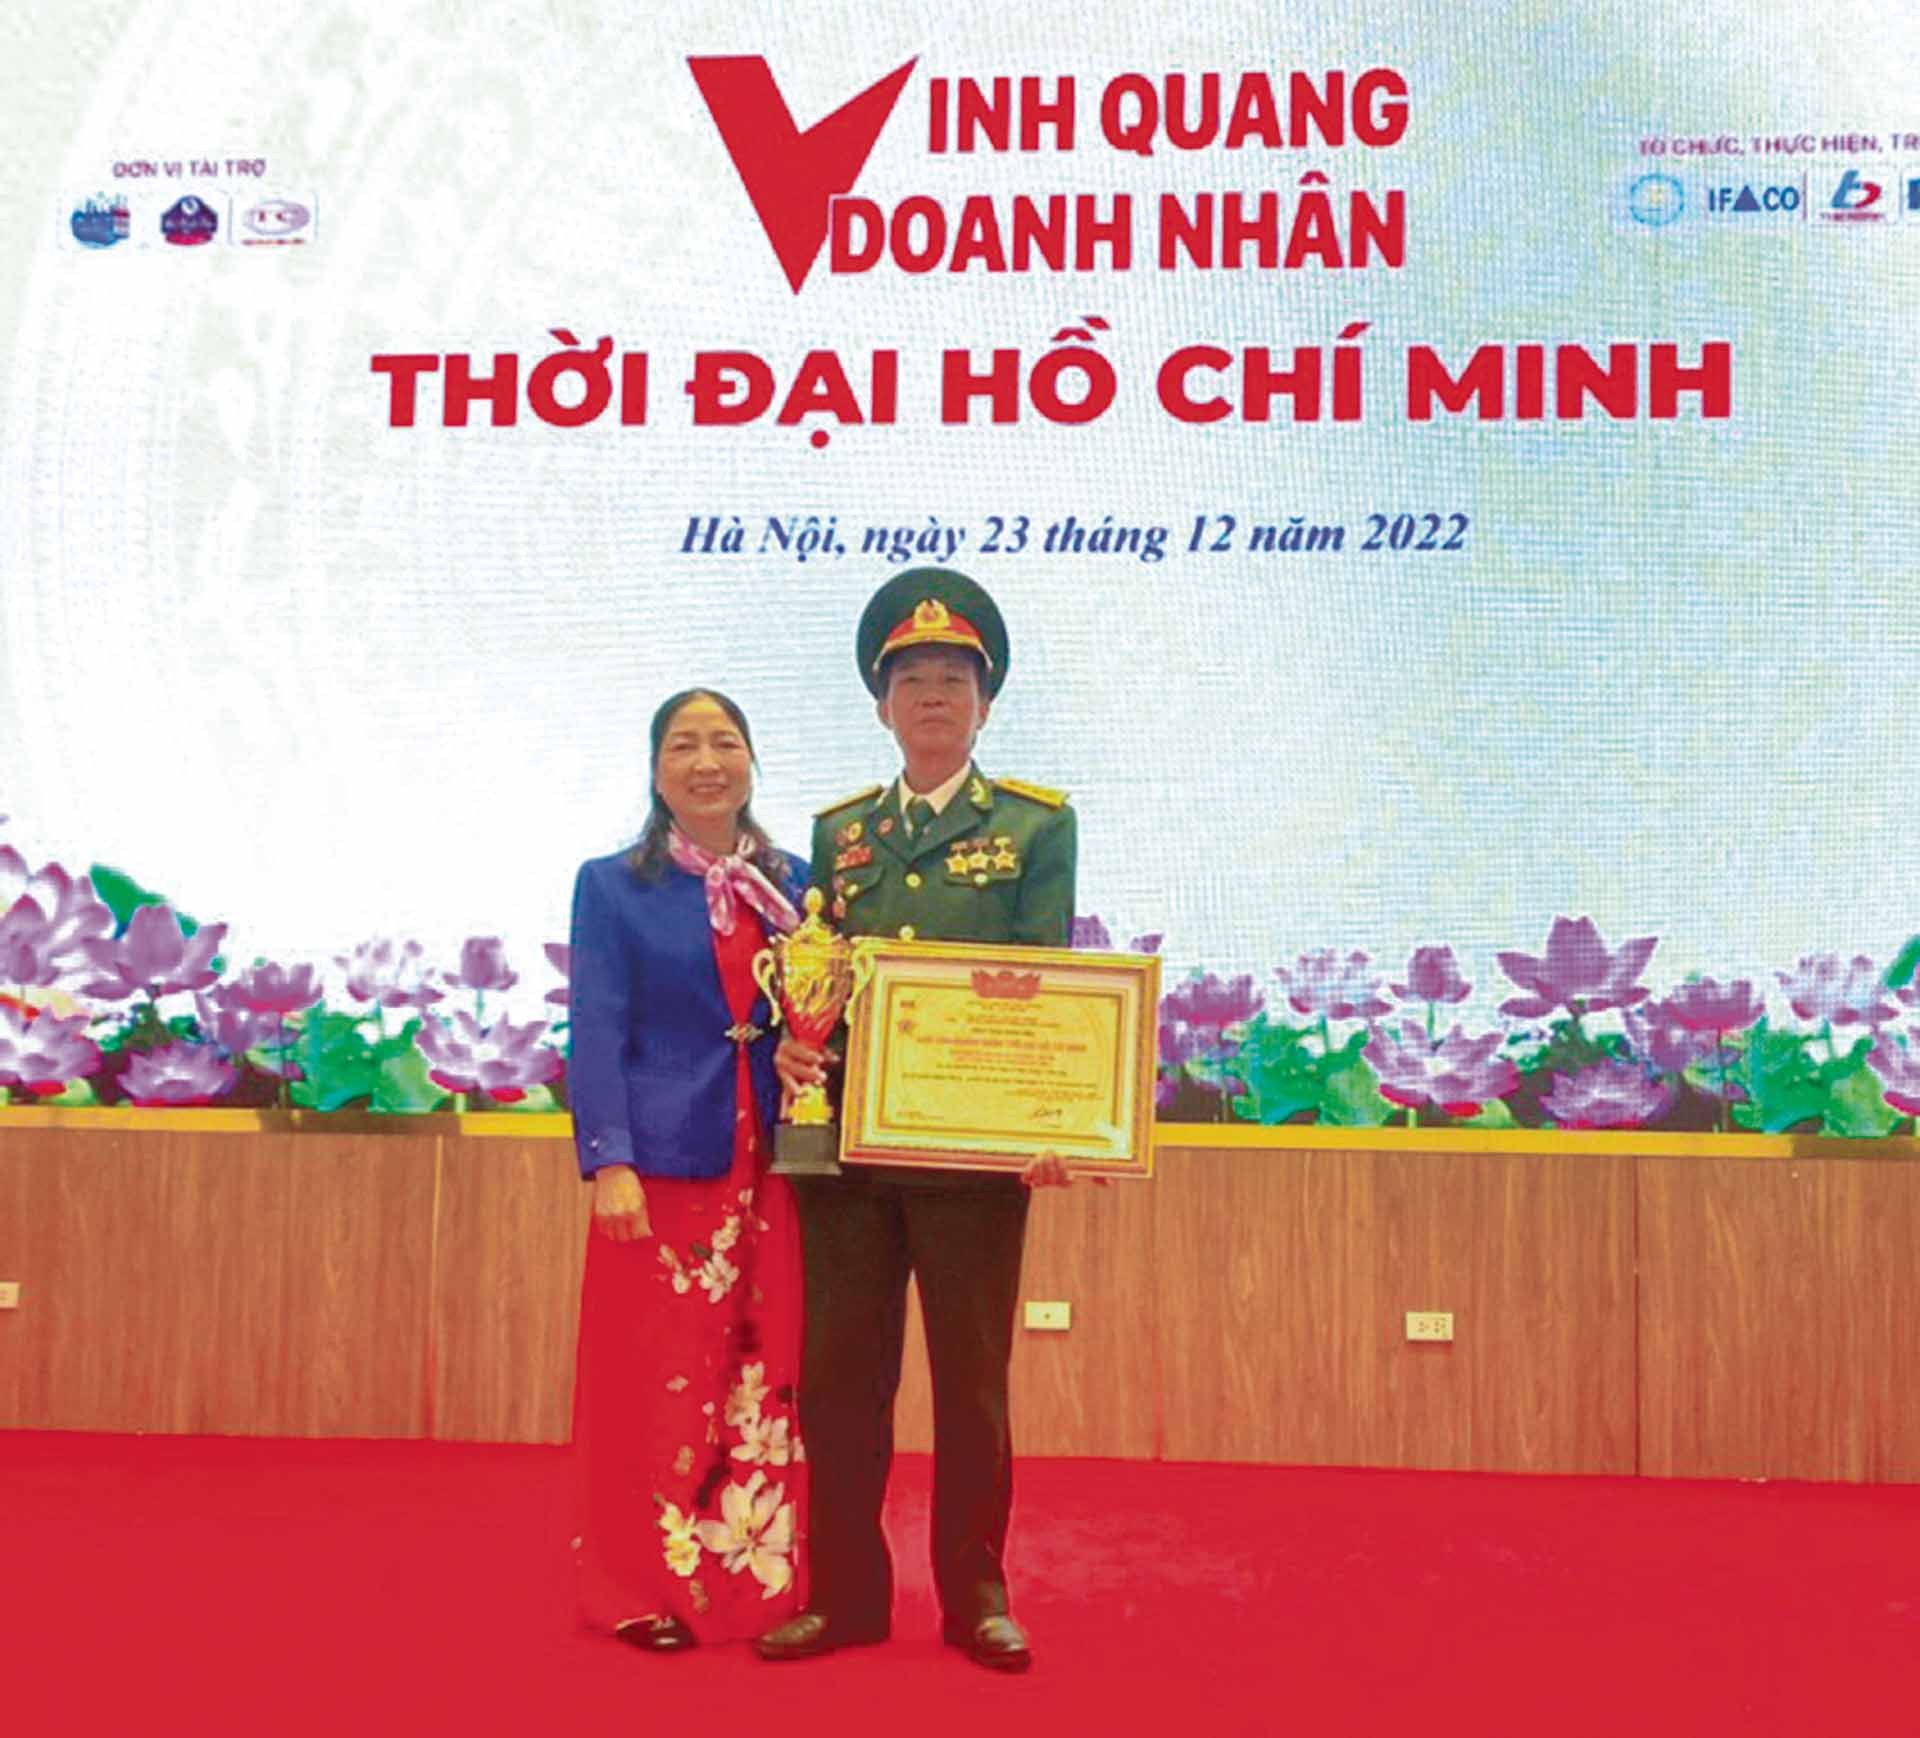 Vợ chồng ông Ngưỡng tại lễ tuyên dương vinh quang doanh nhân thời đại Hồ Chí Minh. (Ảnh: NVCC)